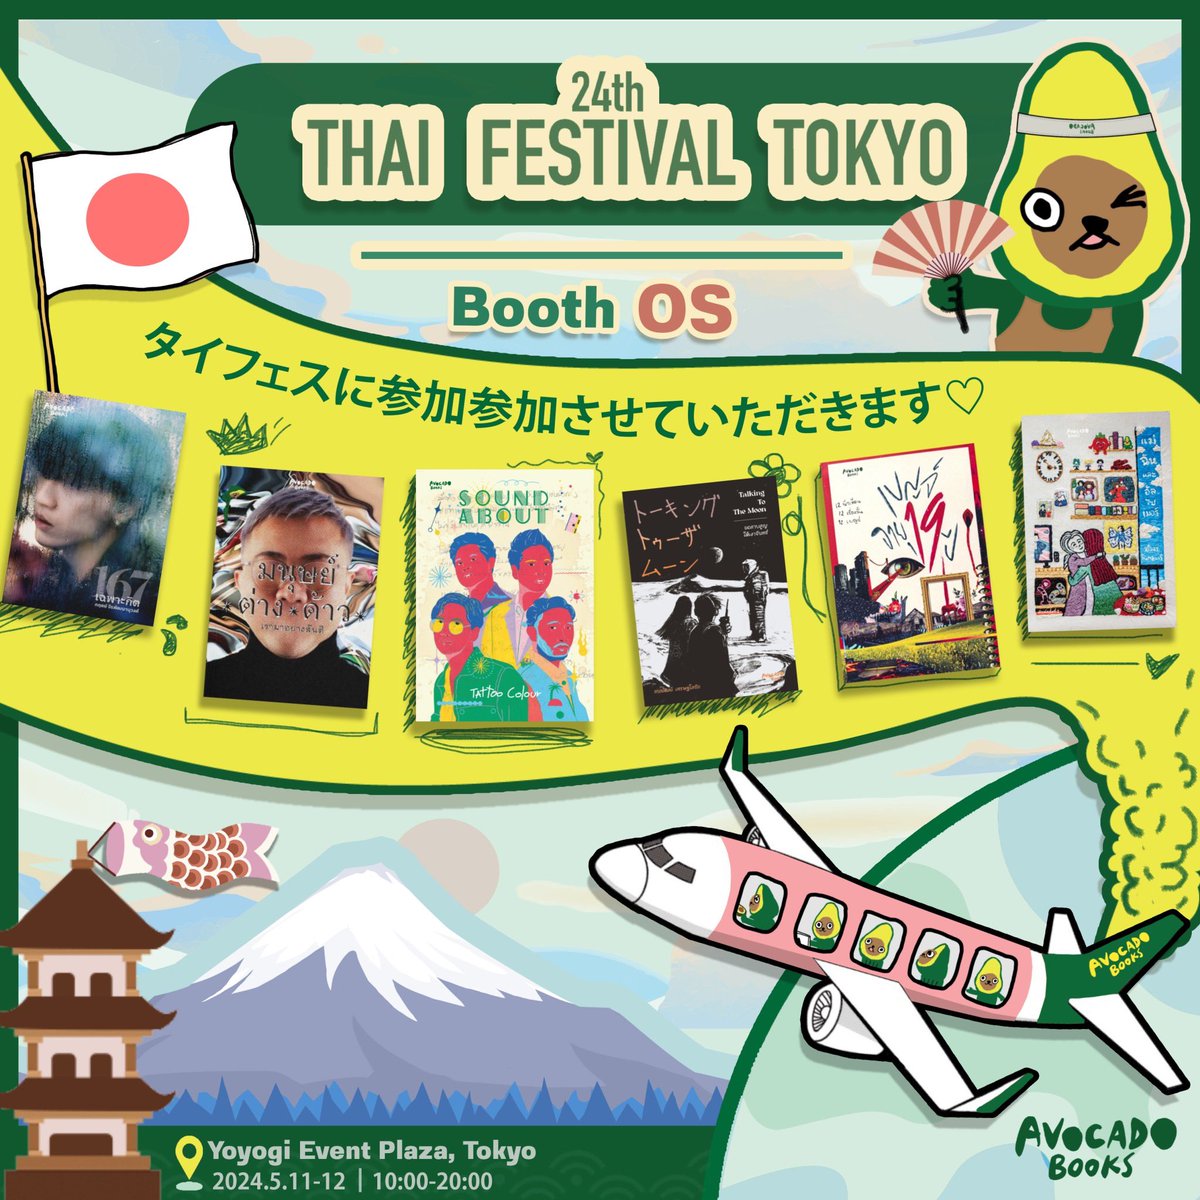 うれしいことに24th Thai Festival TokyoにAvocado Books も参加させていただきます!　楽しみ〜 งาน #ThaiFestivalTokyo2024 เสาร์-อาทิตย์นี้ พี่น้องชาวไทยในญี่ปุ่น ไปหาซื้อหนังสือดี ๆ กันได้เลยที่บูท OS ใครอยากอ่านเล่มไหน รีบพุ่งไปเลย เพราะหนังสือมีจำนวนจำกัดจริงจริ๊ง @thaifes_jp